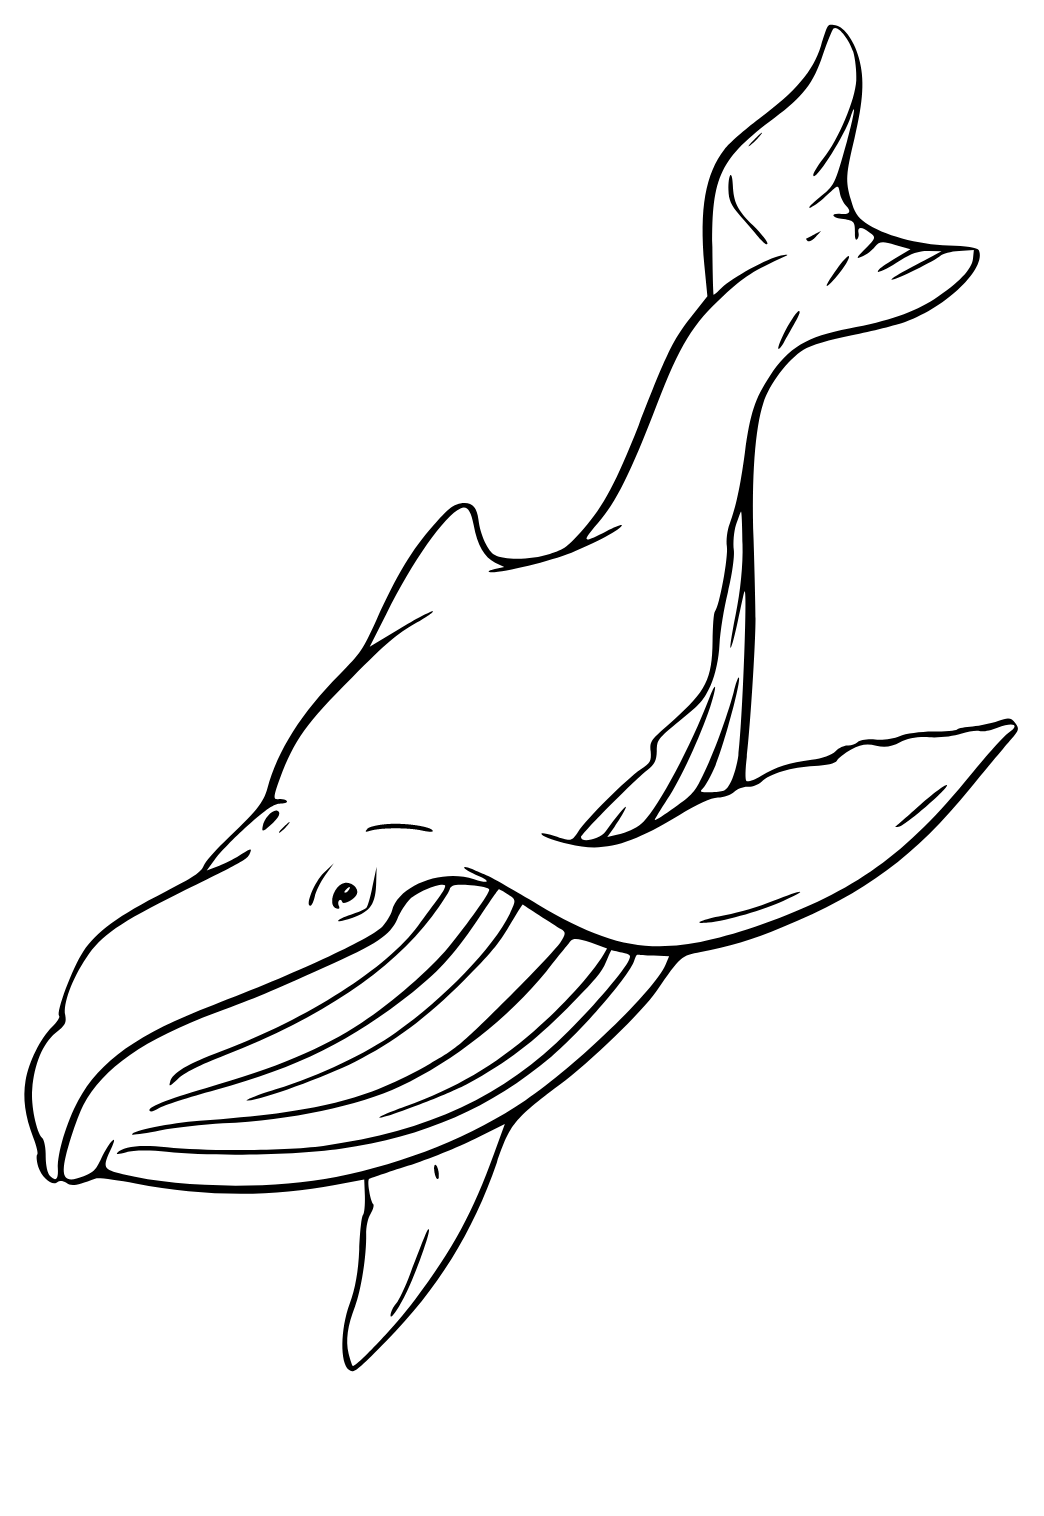 Desenhos para colorir de desenho de uma baleia fofa para colorir  